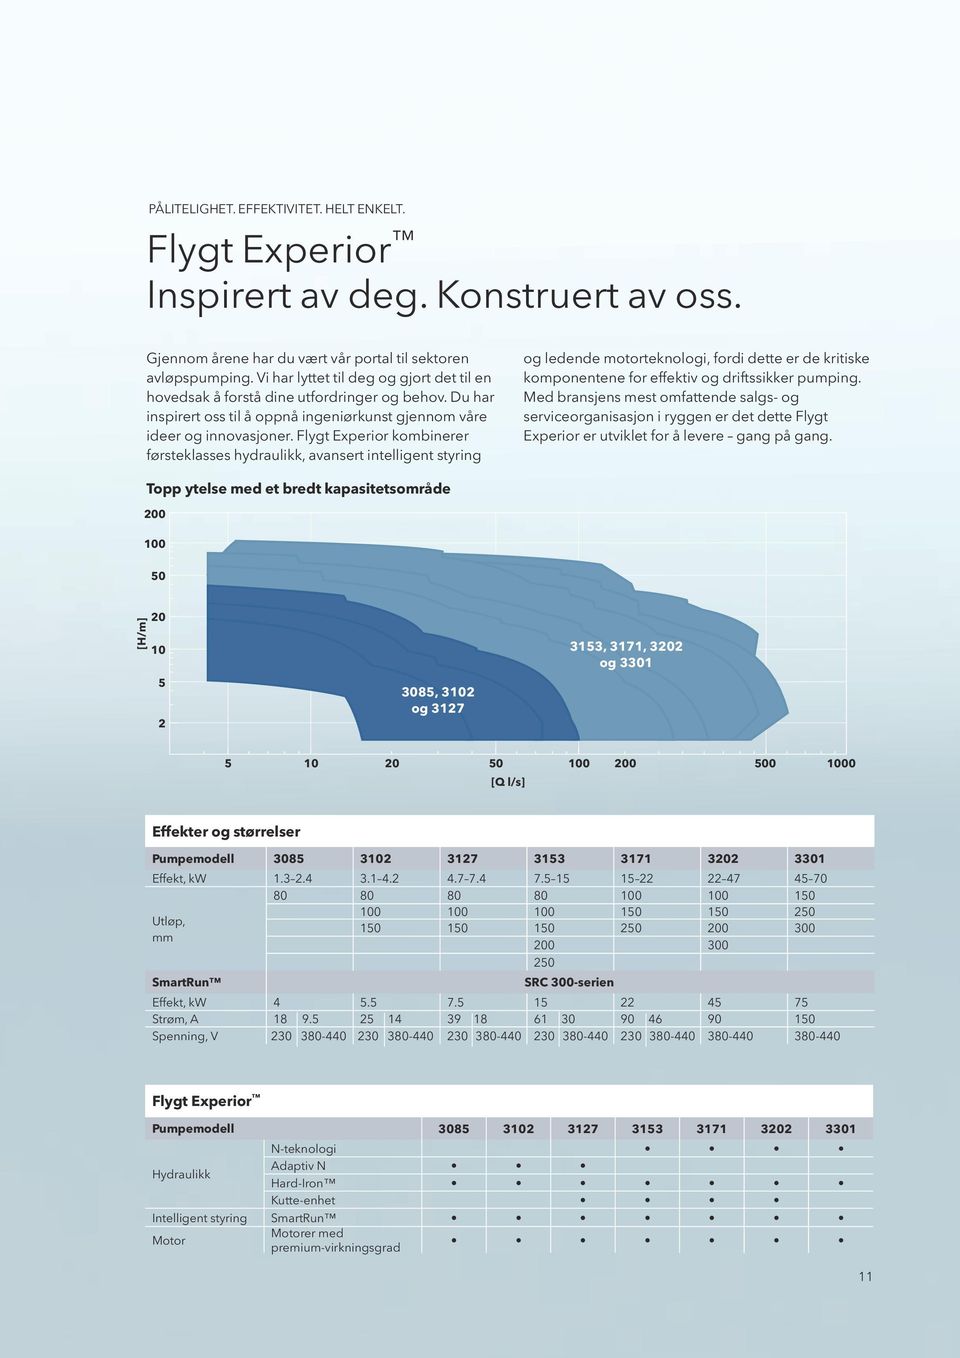 Flygt Experior kombinerer førsteklasses hydraulikk, avansert intelligent styring og ledende motorteknologi, fordi dette er de kritiske komponentene for effektiv og driftssikker pumping.